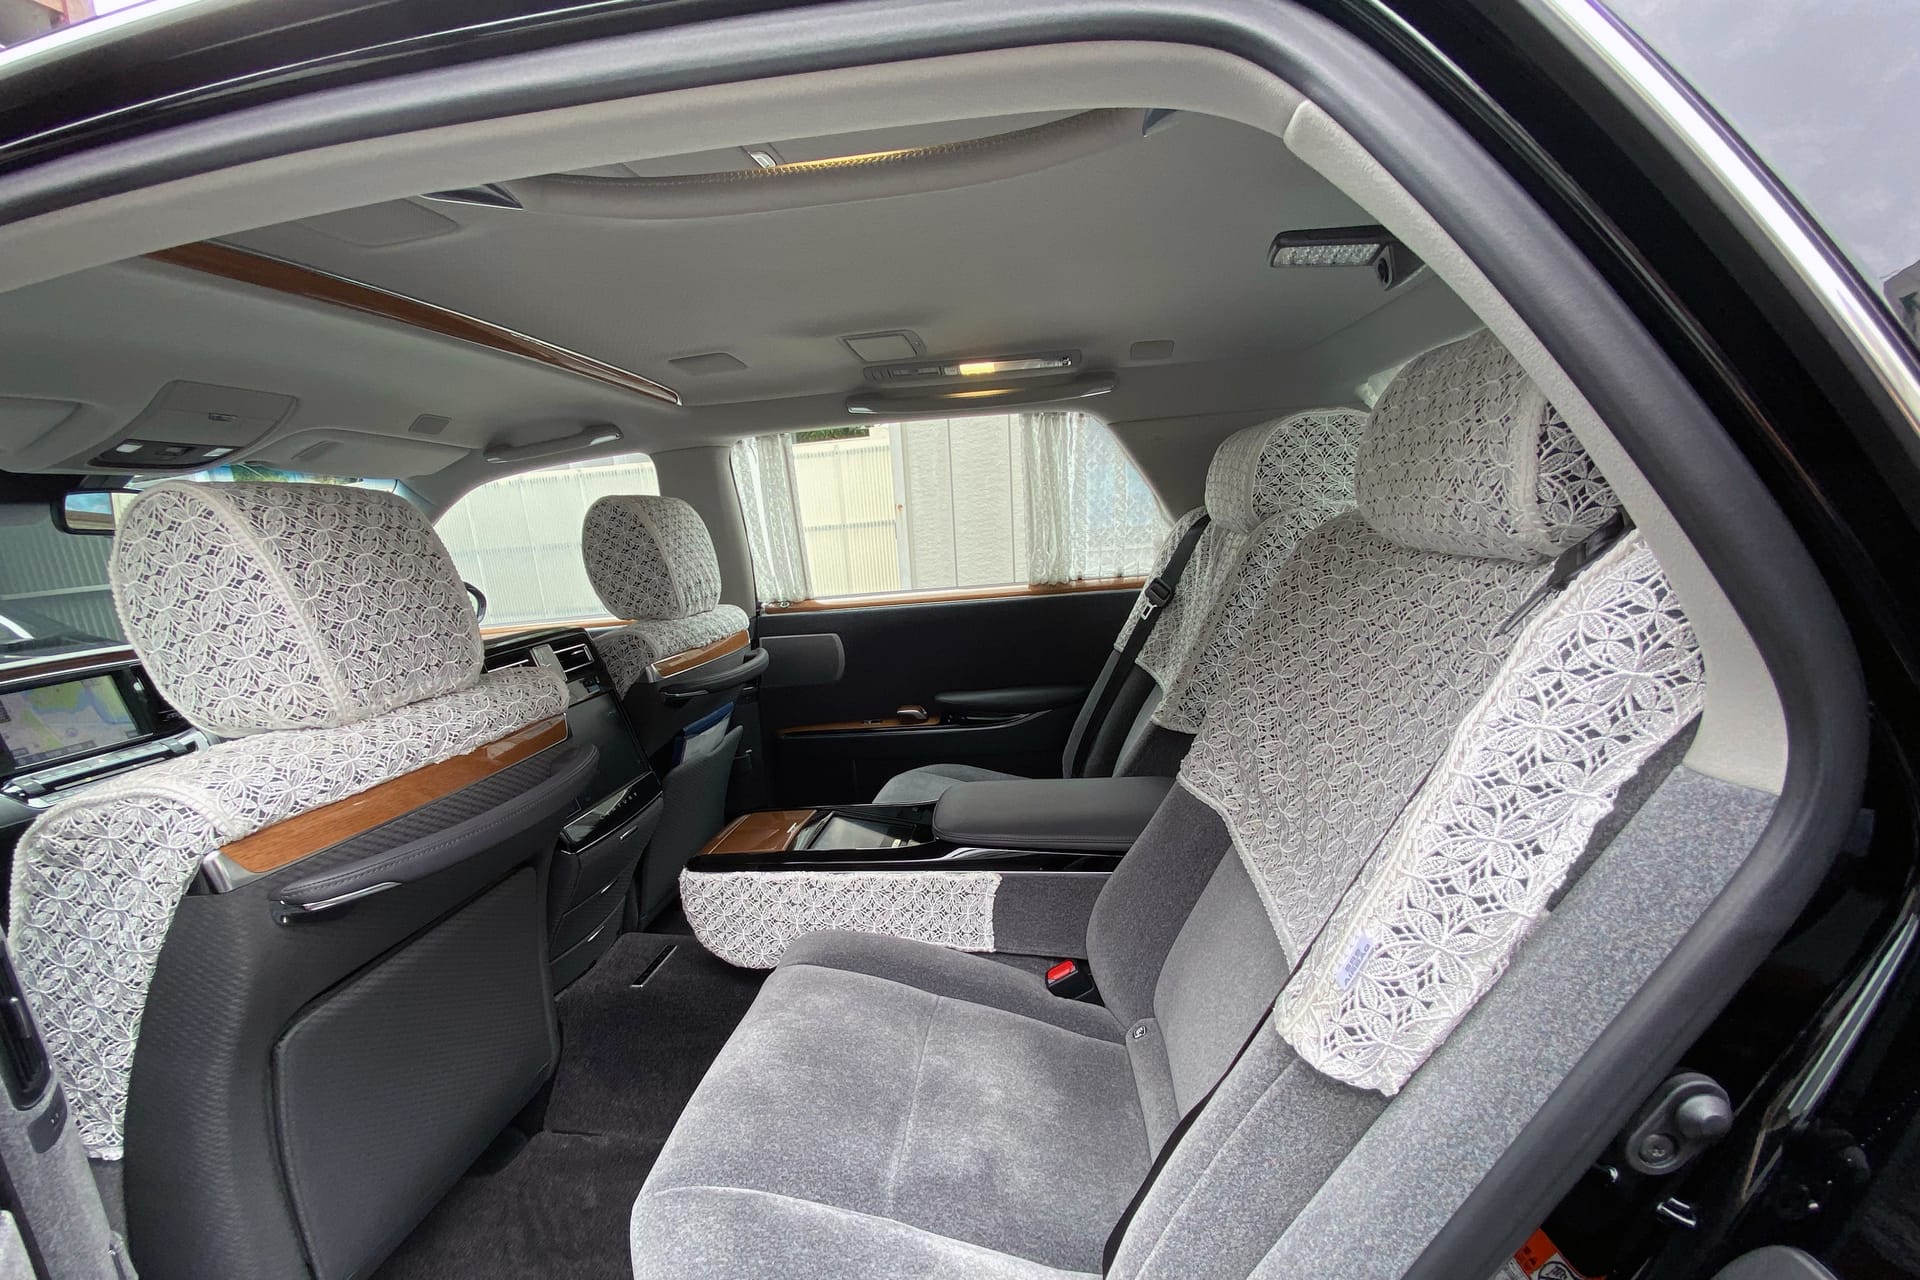 Luxus zwischen Häkeldecken: Innenraumschmuck im Häkelstil beim nur in Japan erhältlichen Toyota Century.